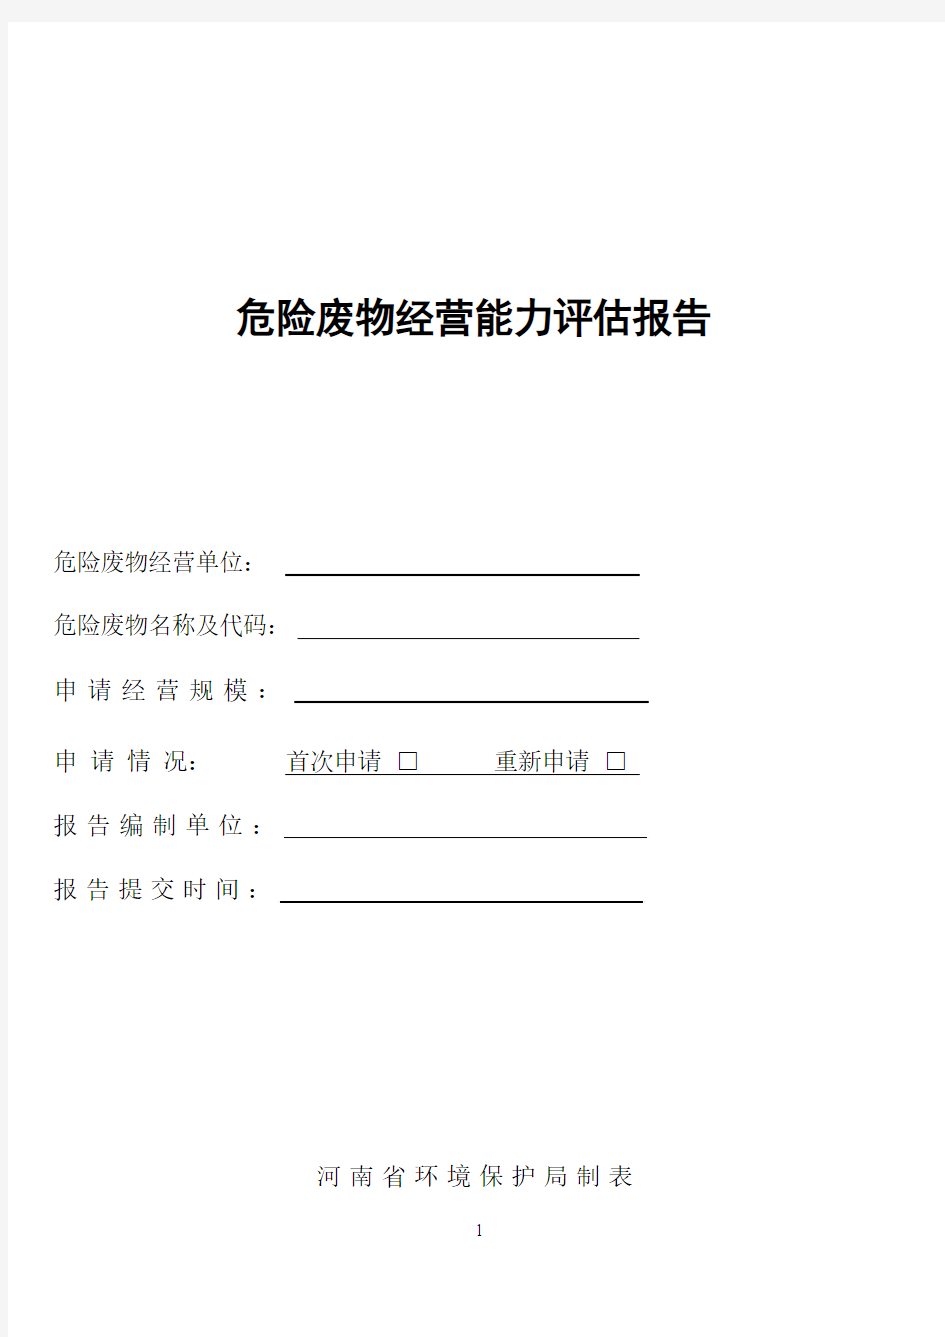 河南省危险废物经营许可证申请材料样本格式